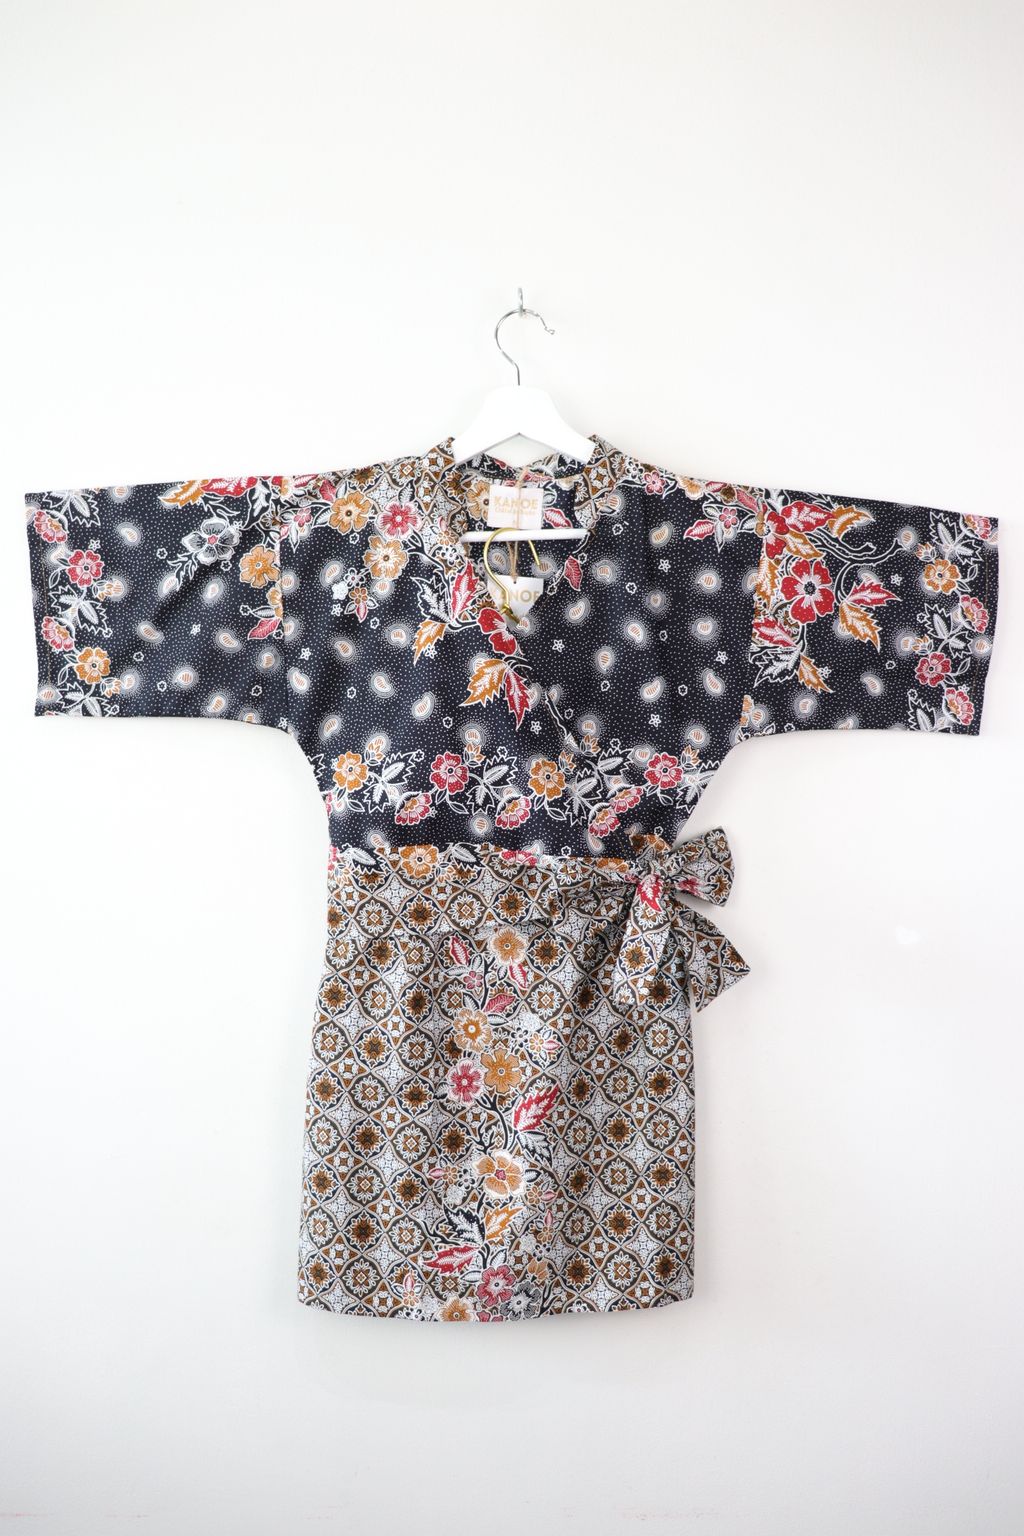 batik-kimono-wrap-matching-set41